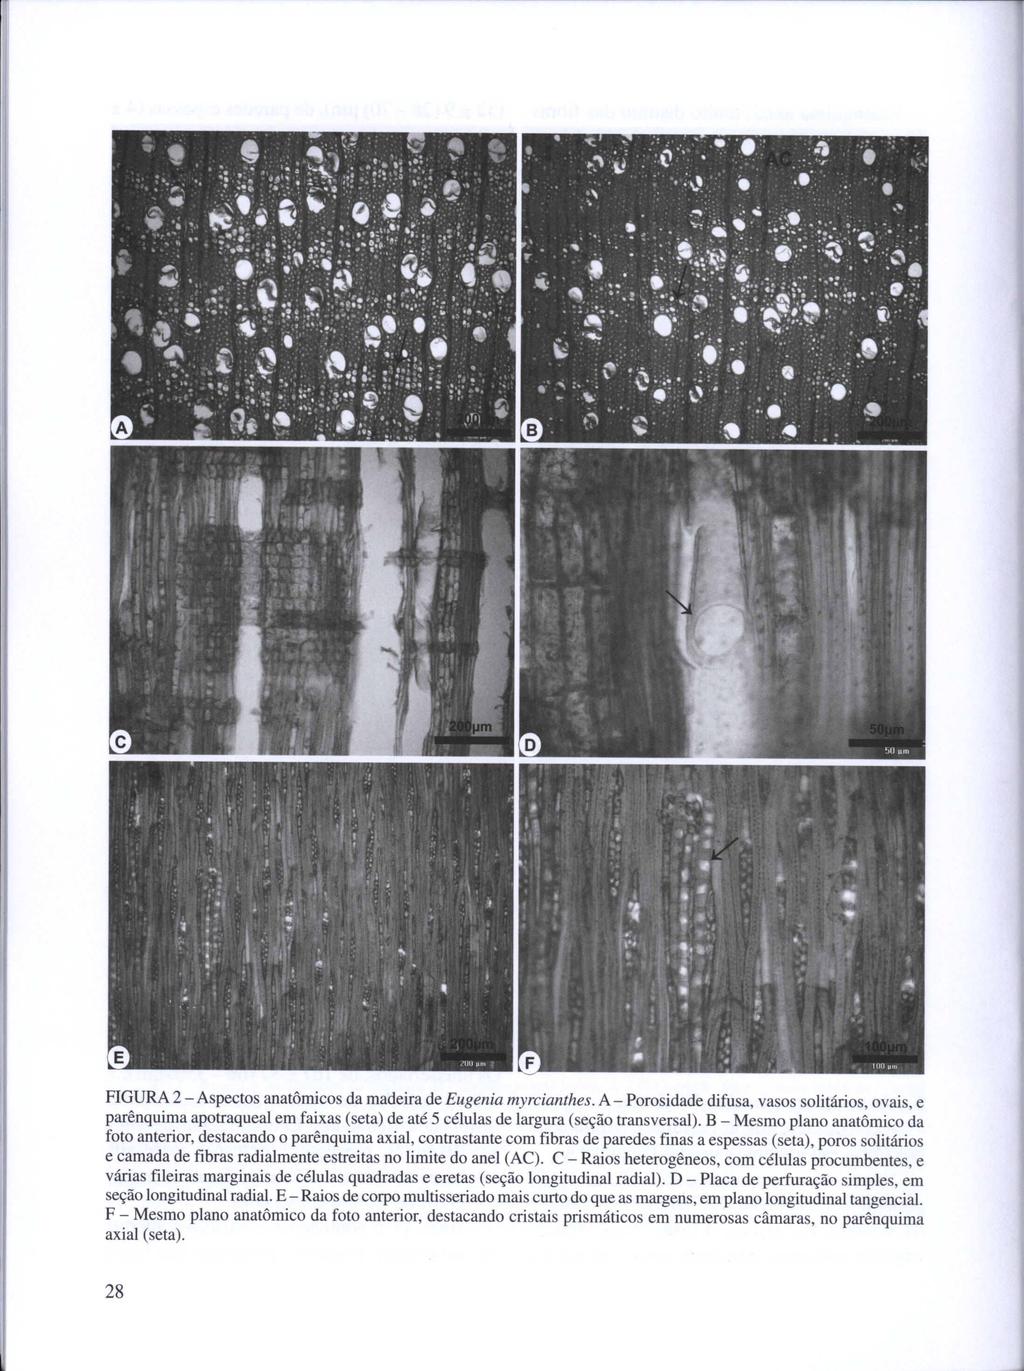 FIGURA 2 - Aspectos anatômicos da madeira de Eugenia myrcianthes.